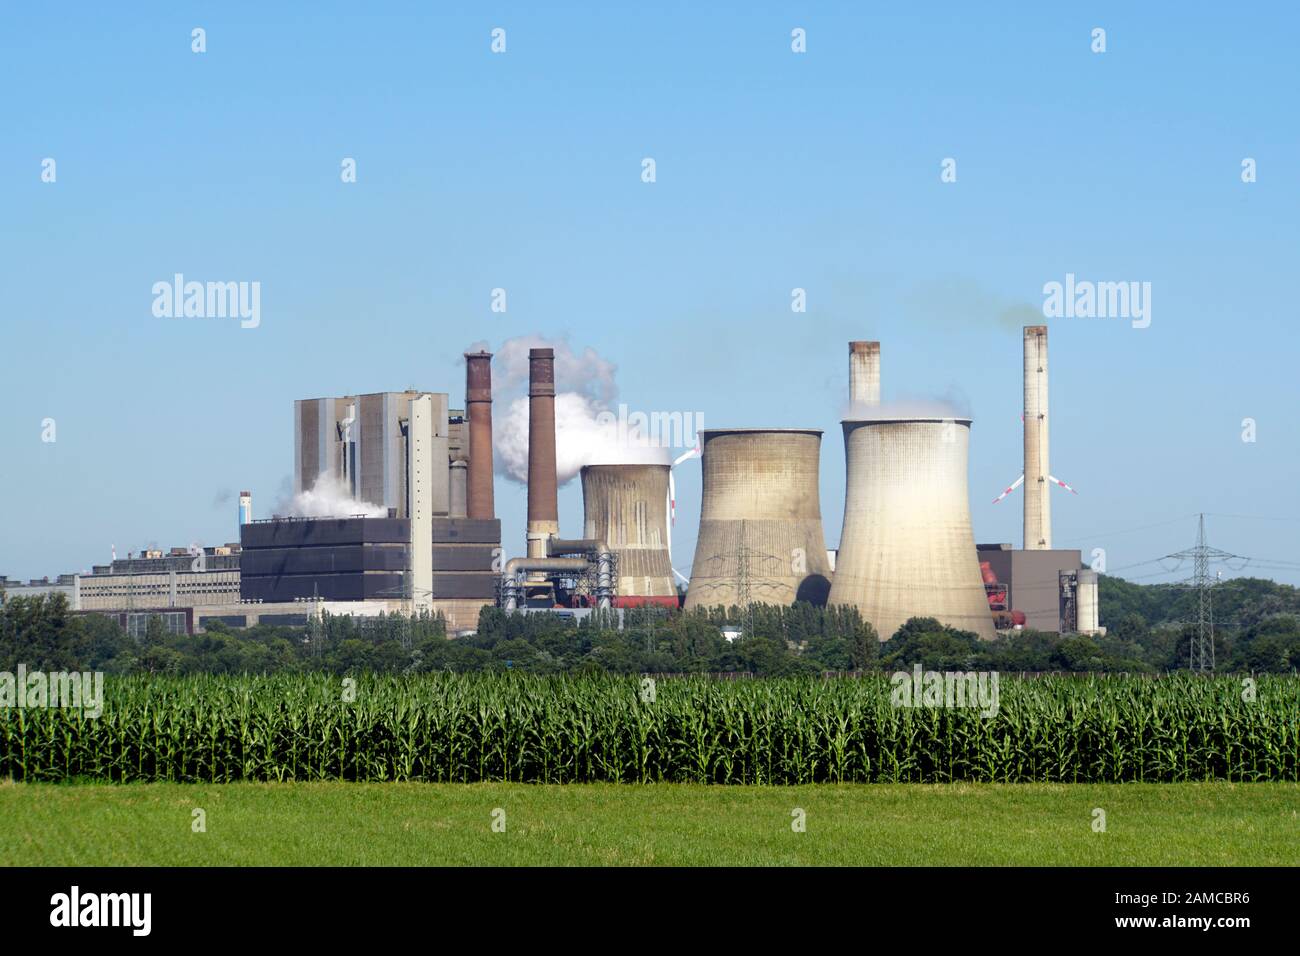 Braunkohlekraftwerk Weisweiler, Stolberg, Nordrhein-Westfalen, Deutschland Foto Stock